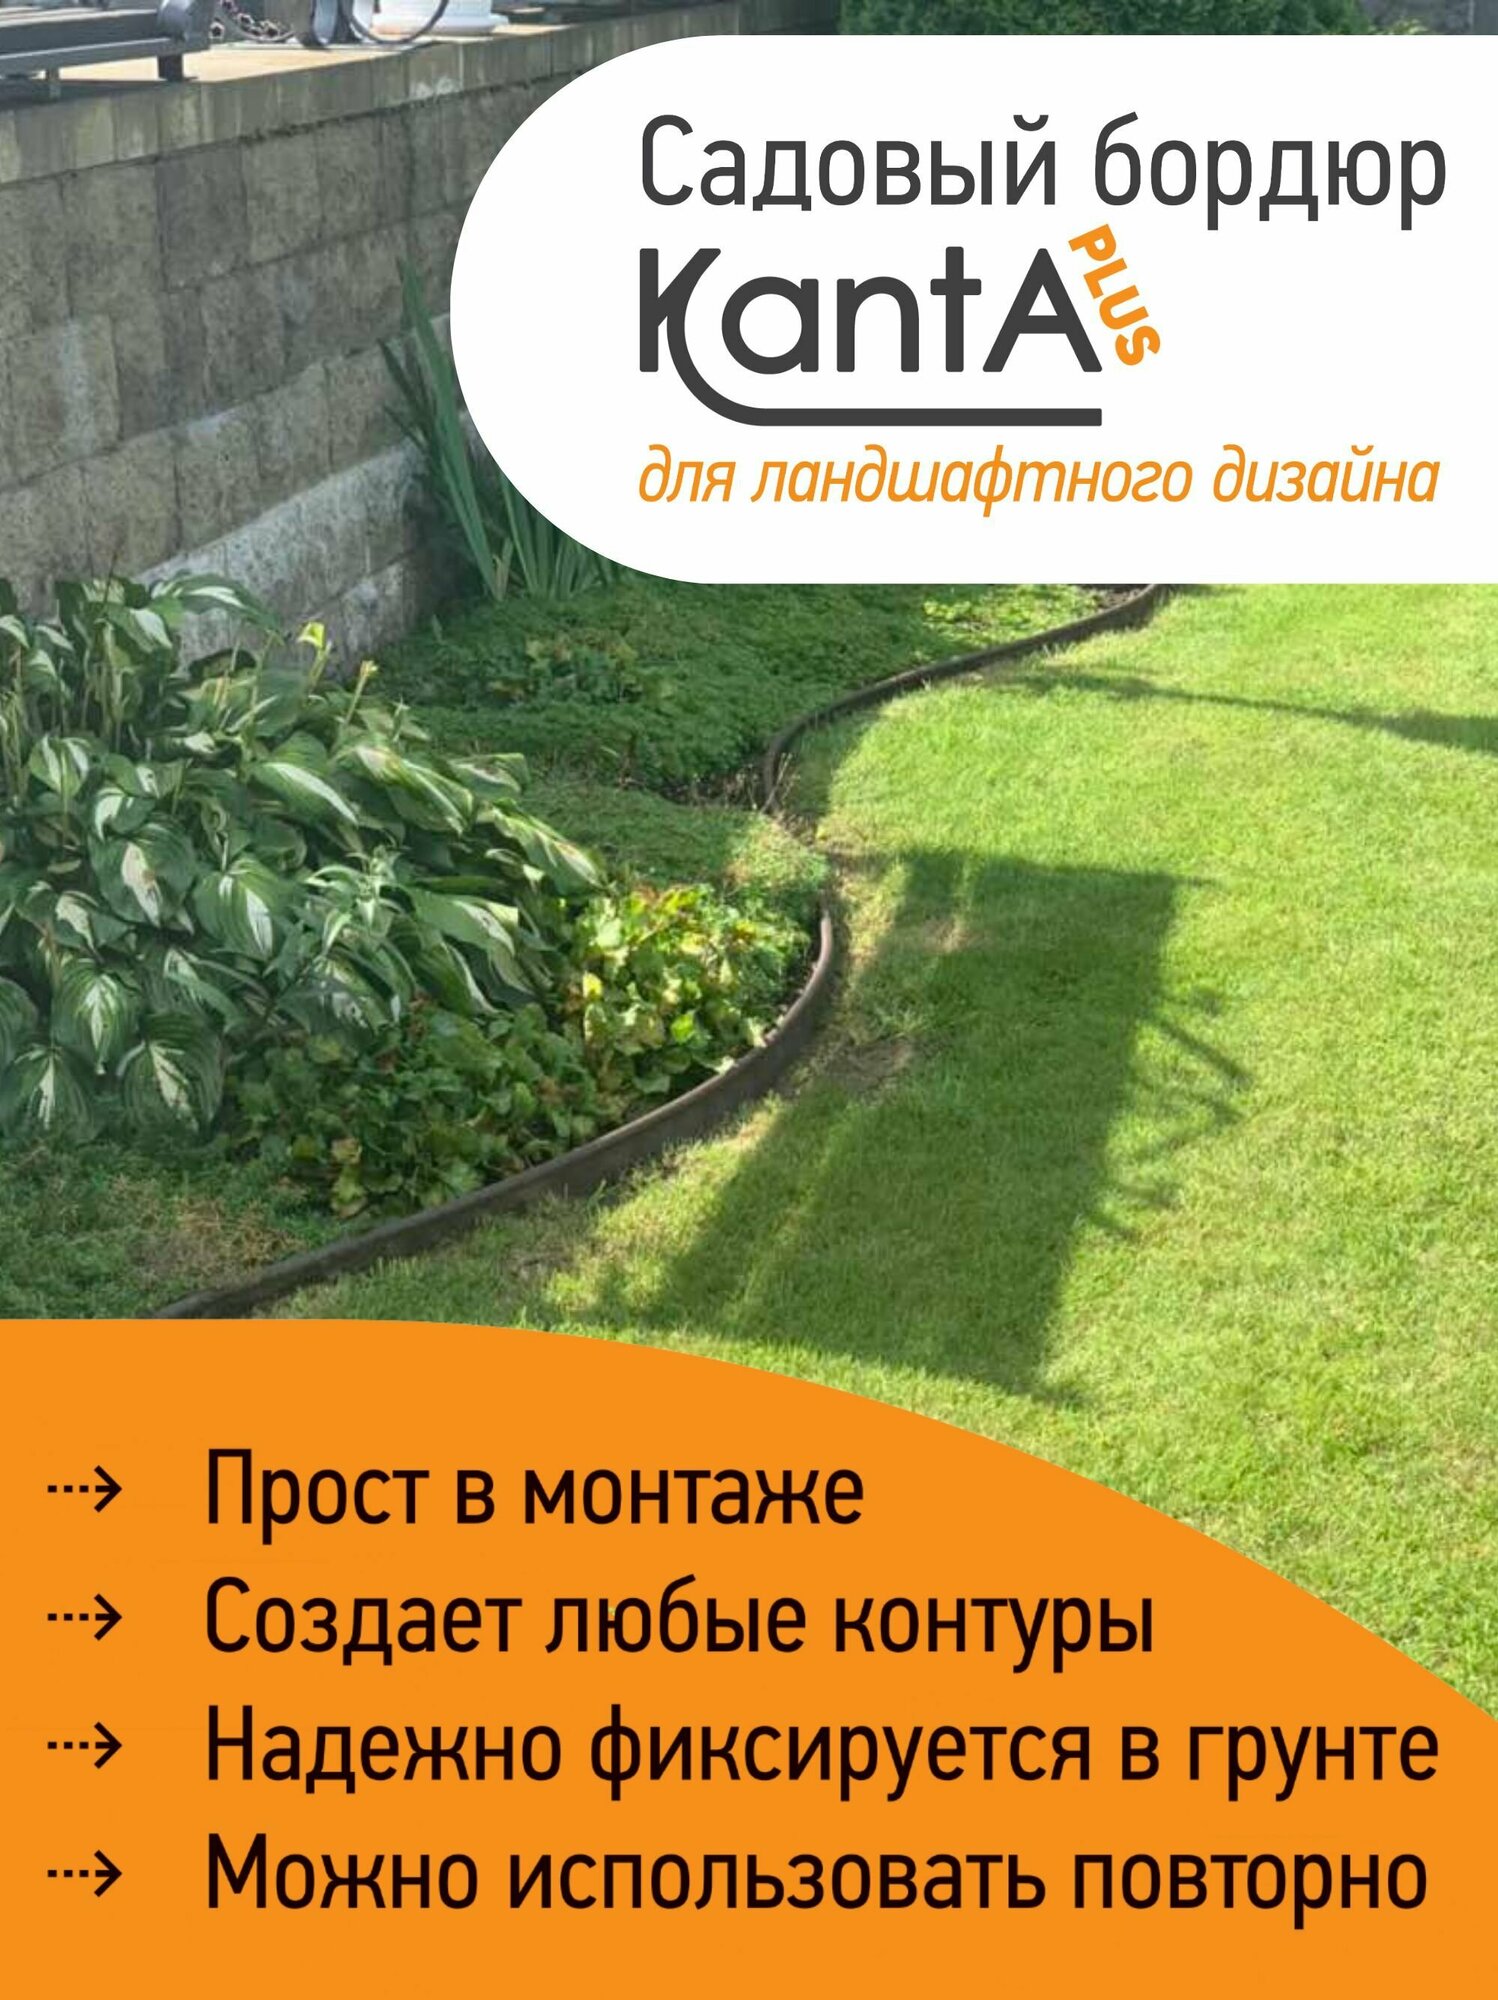 Бордюр садовый Стандартпарк Канта Плюс (Standartpark KANTA Plus), коричневый, длина 10 м, высота 11 см, диаметр трубки 2.1 см - фотография № 2